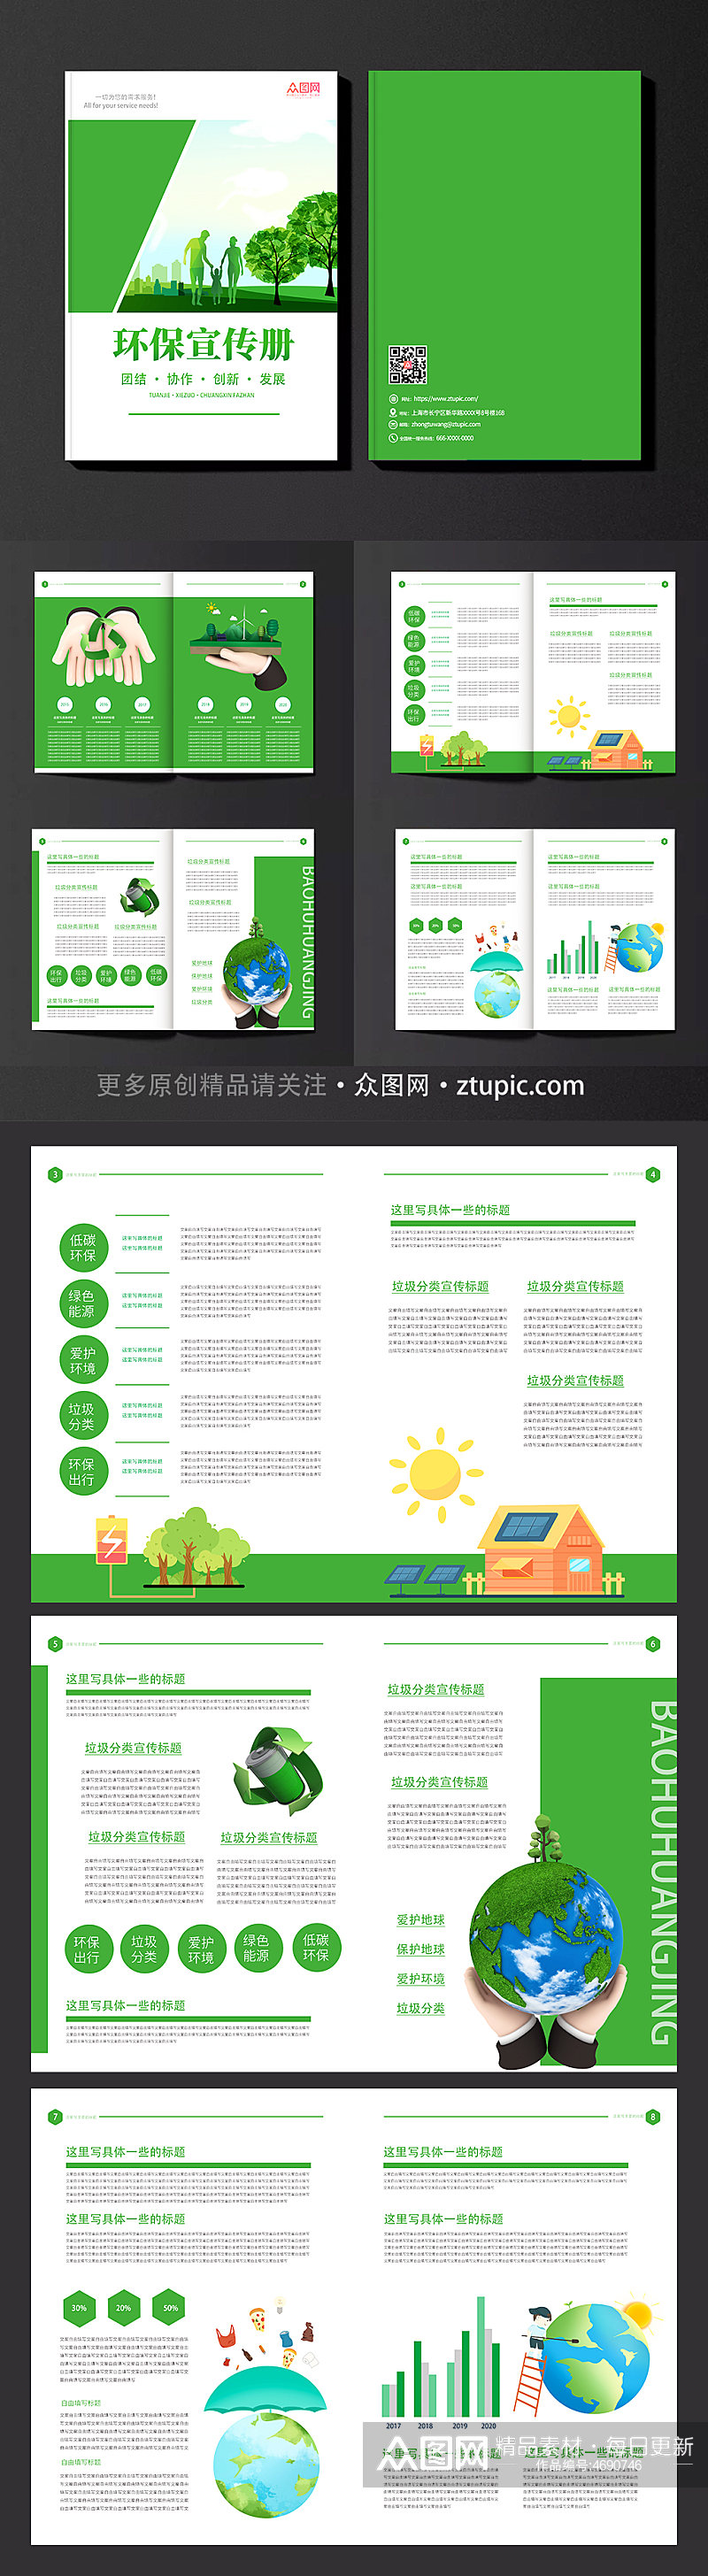 绿色创意环保画册宣传设计模板素材